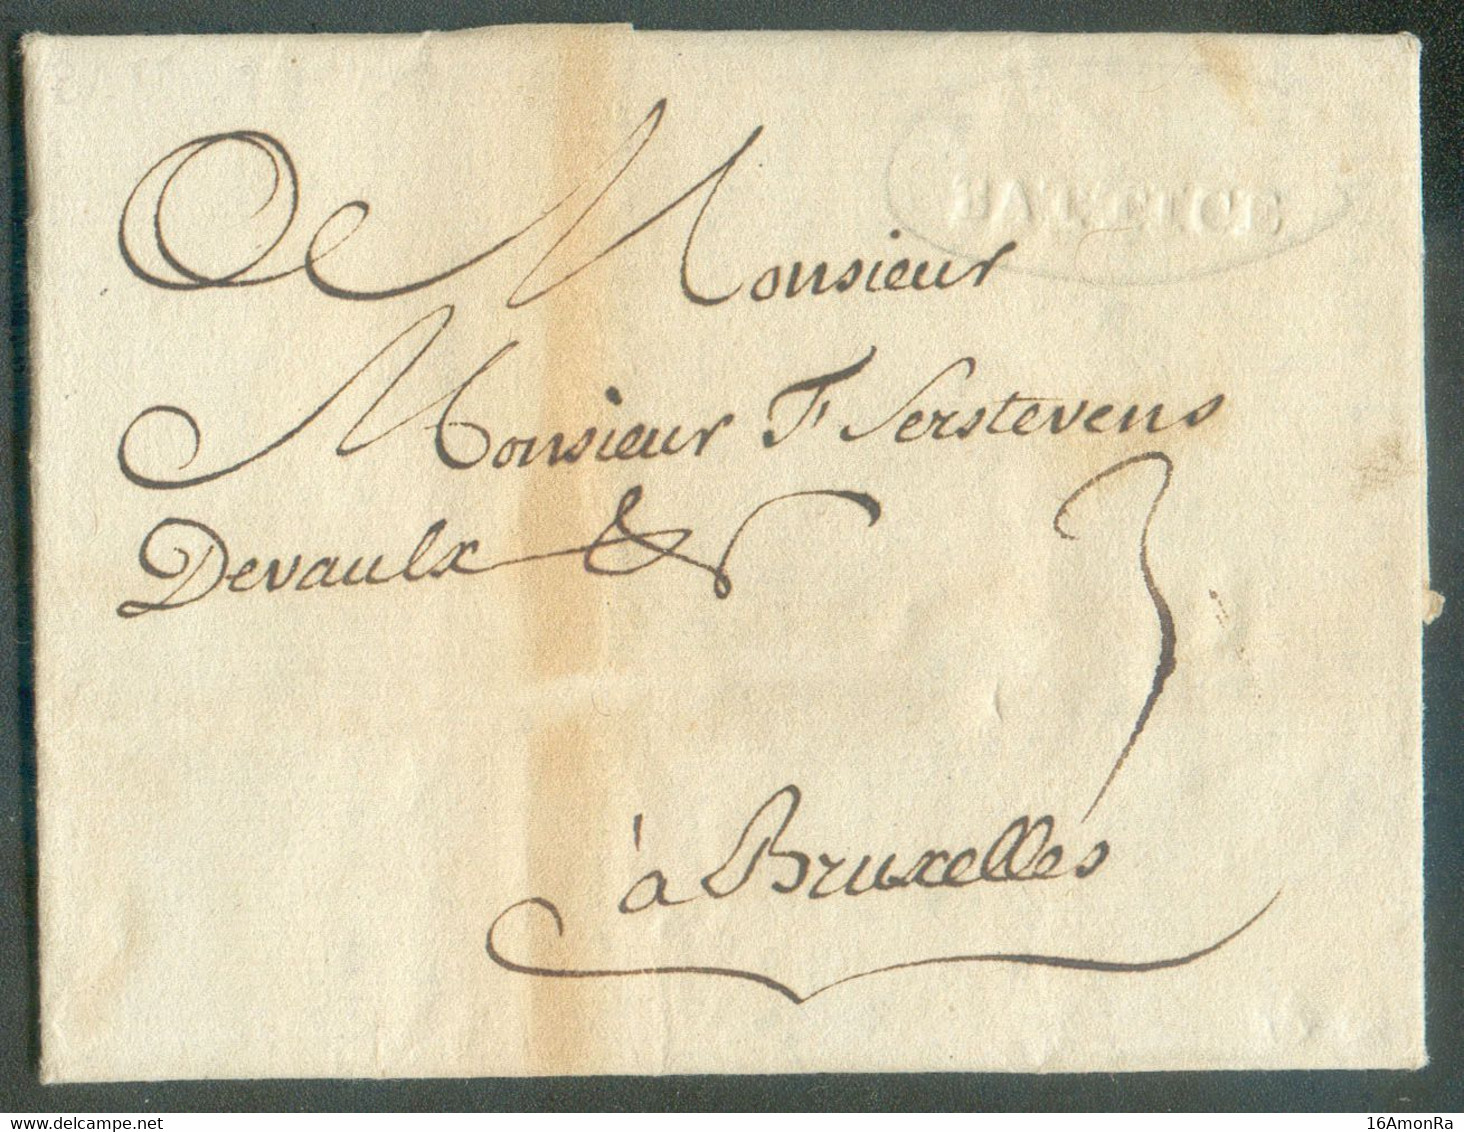 LAC De DOLHAIN Le 30 Mars 1778 Via (griffe En Creux)  BATTICE Vers Bruxelles - Très Bon Texte Sur Le Commerce Des Draps - 1714-1794 (Pays-Bas Autrichiens)